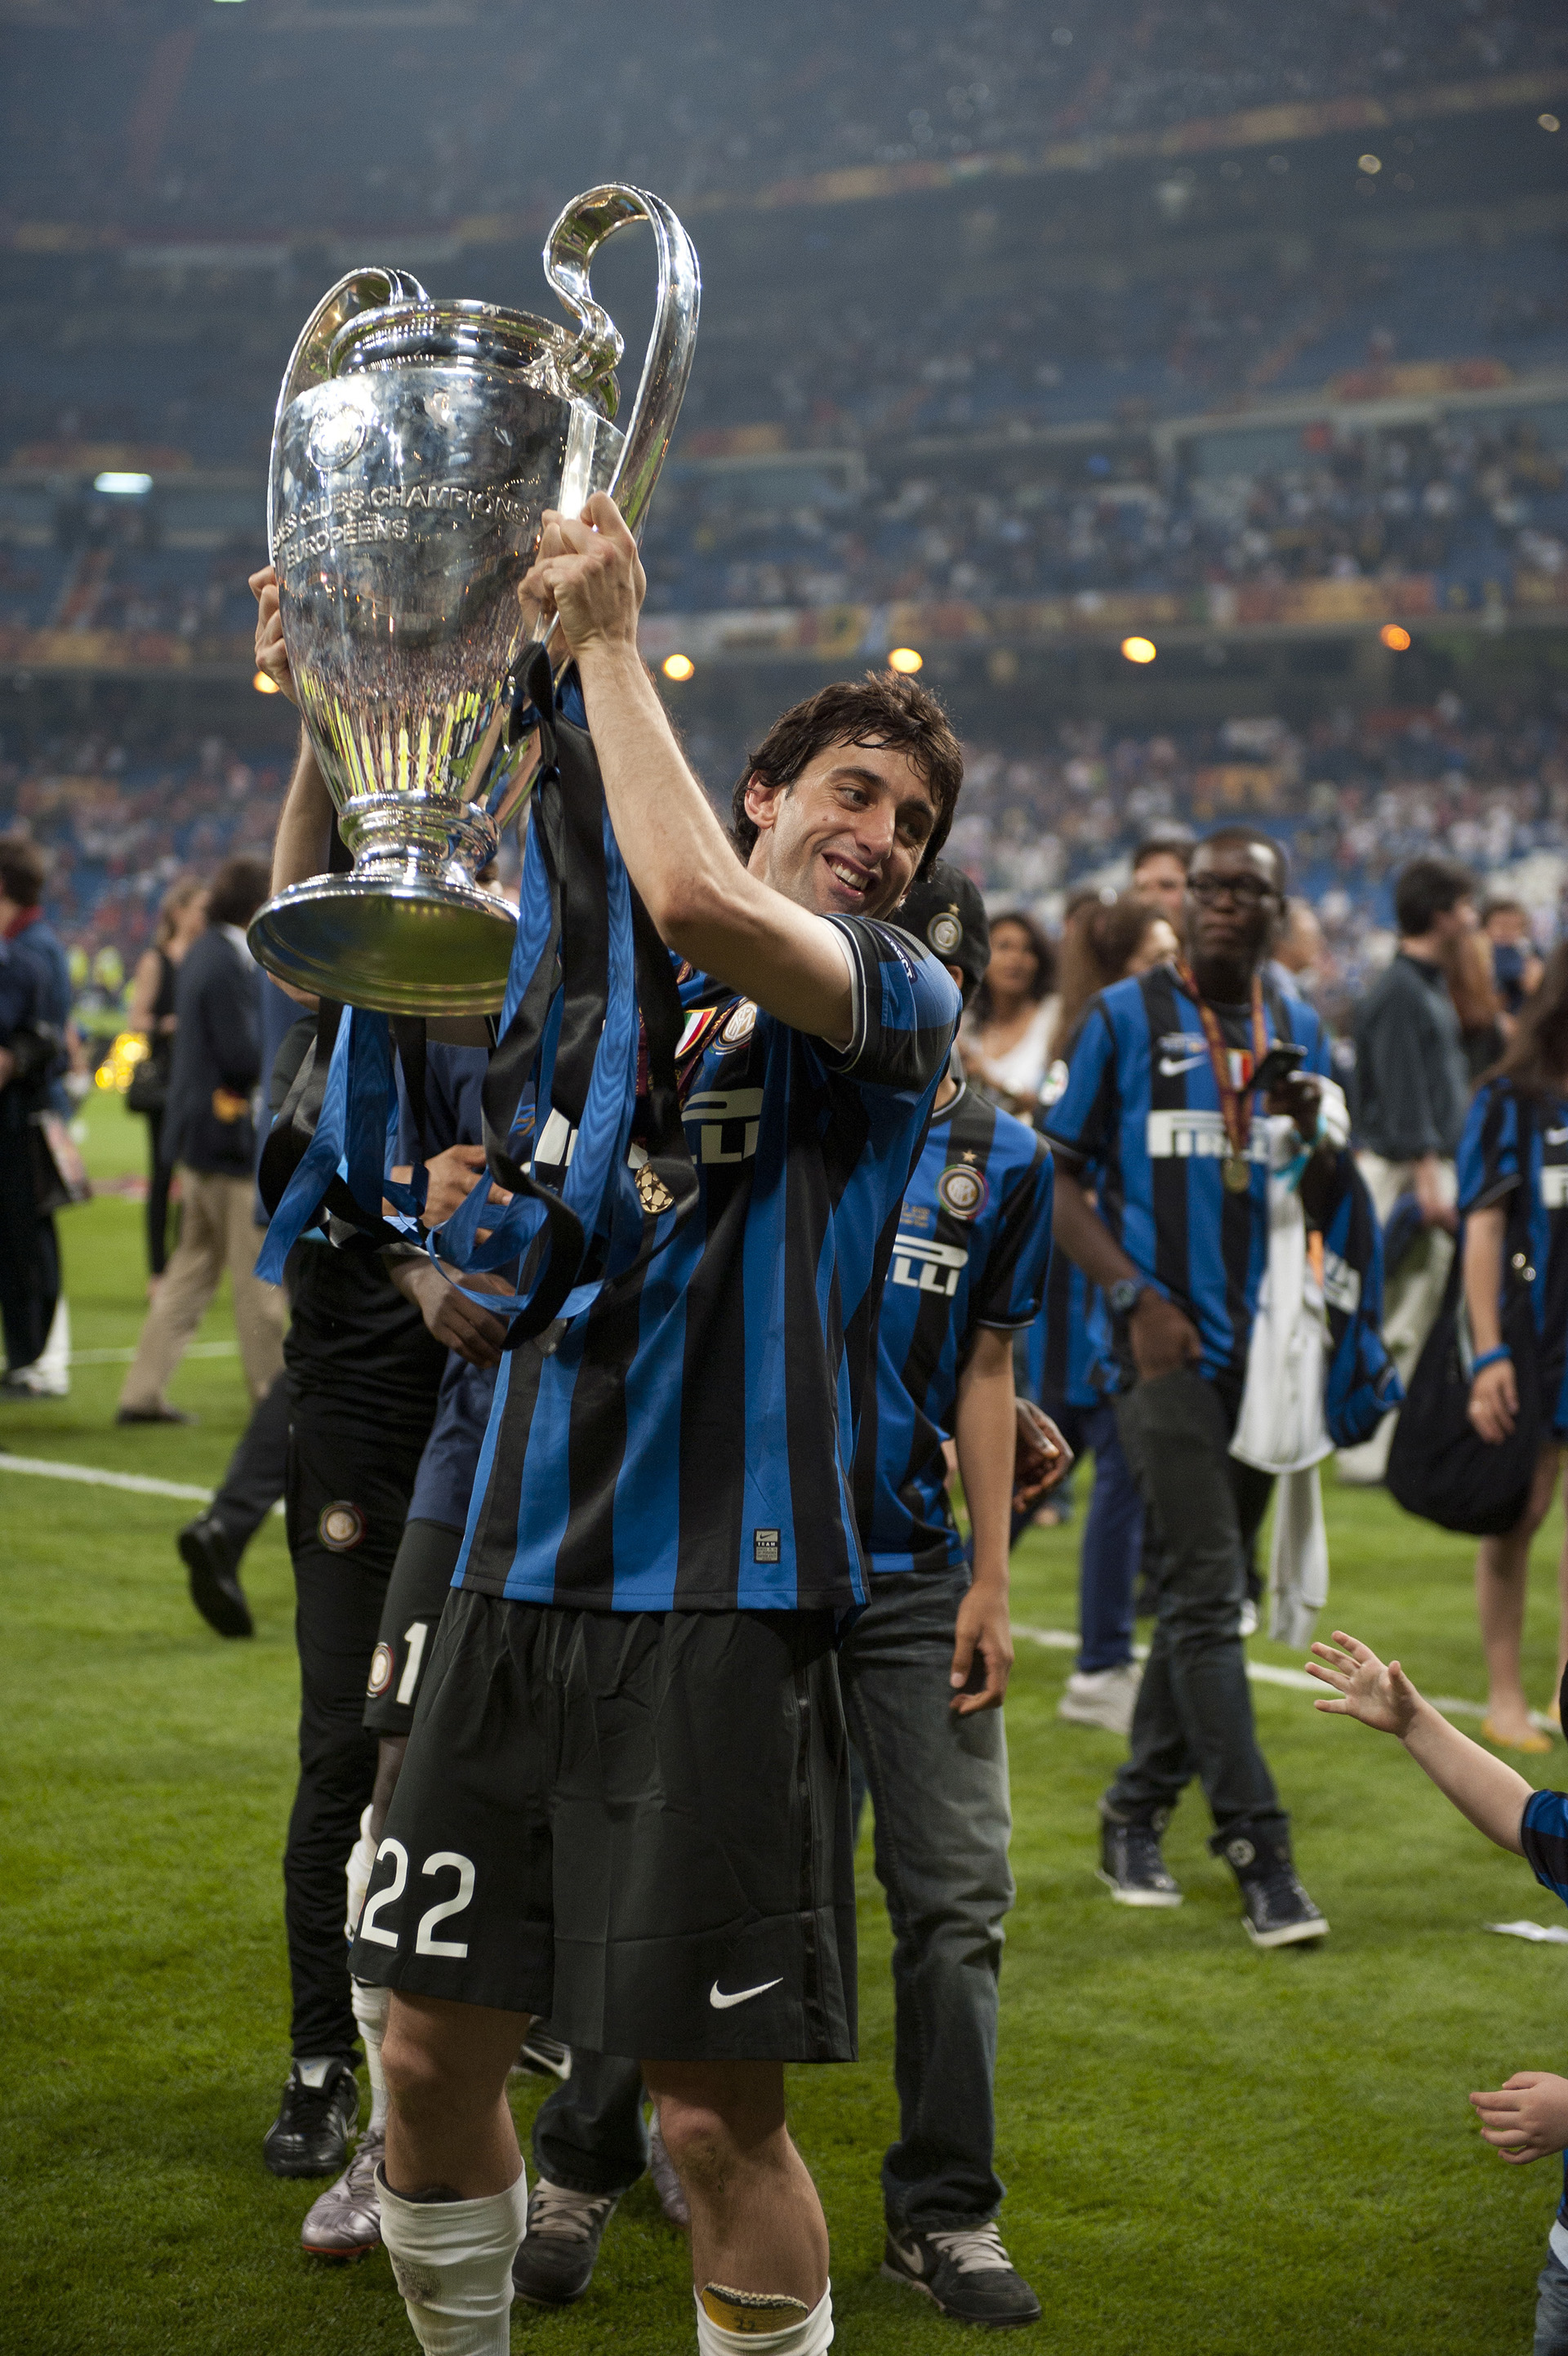 Inter ganó la edición 2010 (Foto: AMA/Corbis via Getty Images)